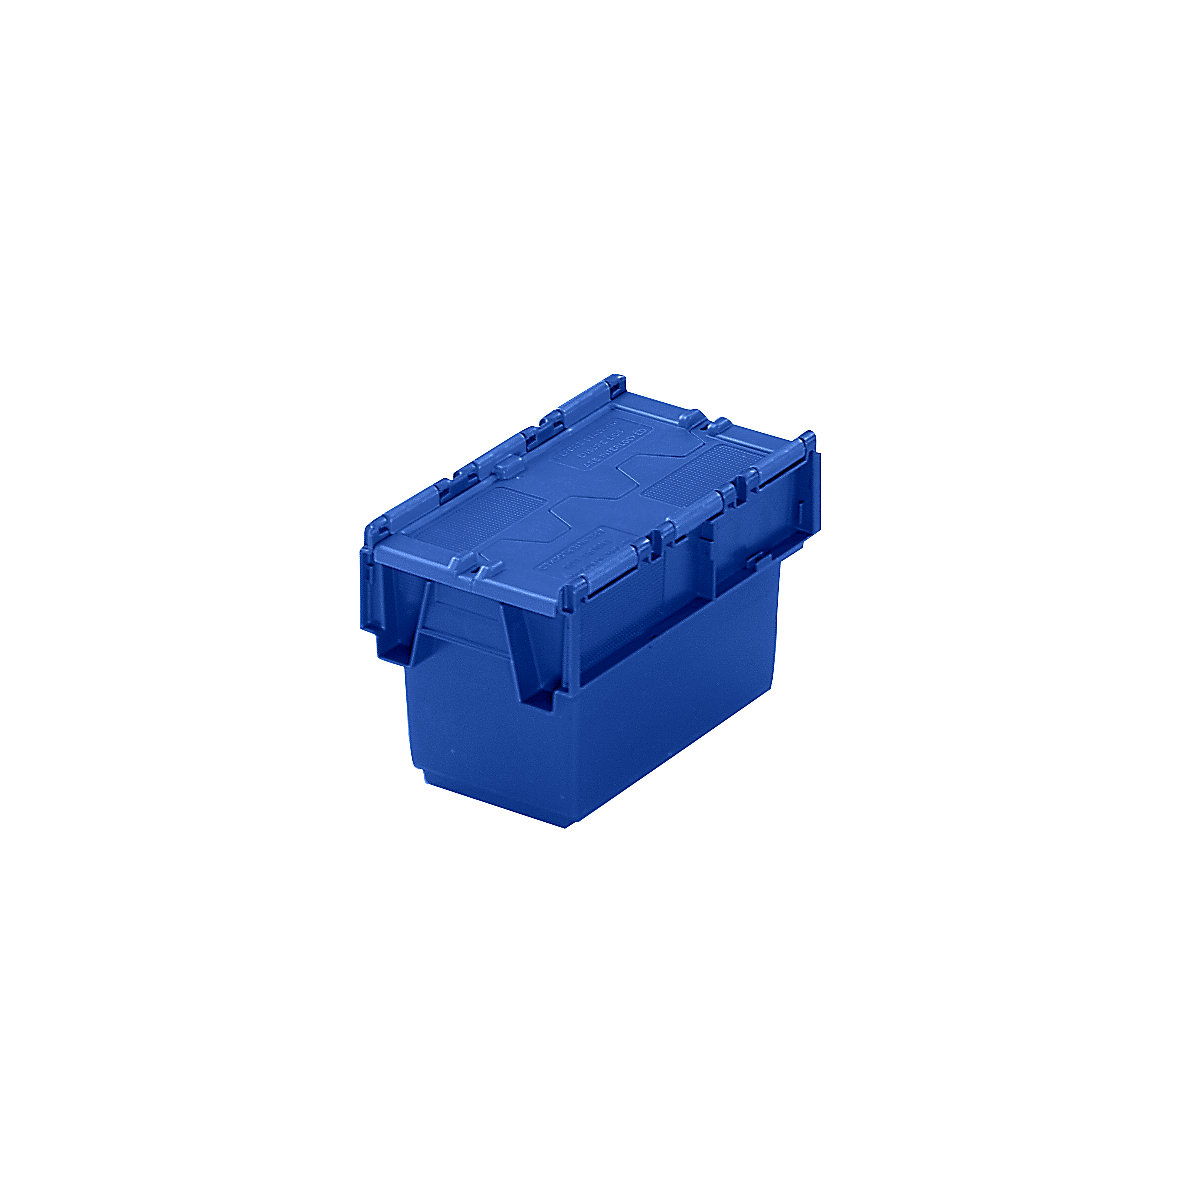 Mehrweg-Stapelbehälter mit Klappdeckel, Inhalt 6 Liter, LxBxH 300 x 200 x 200 mm, blau